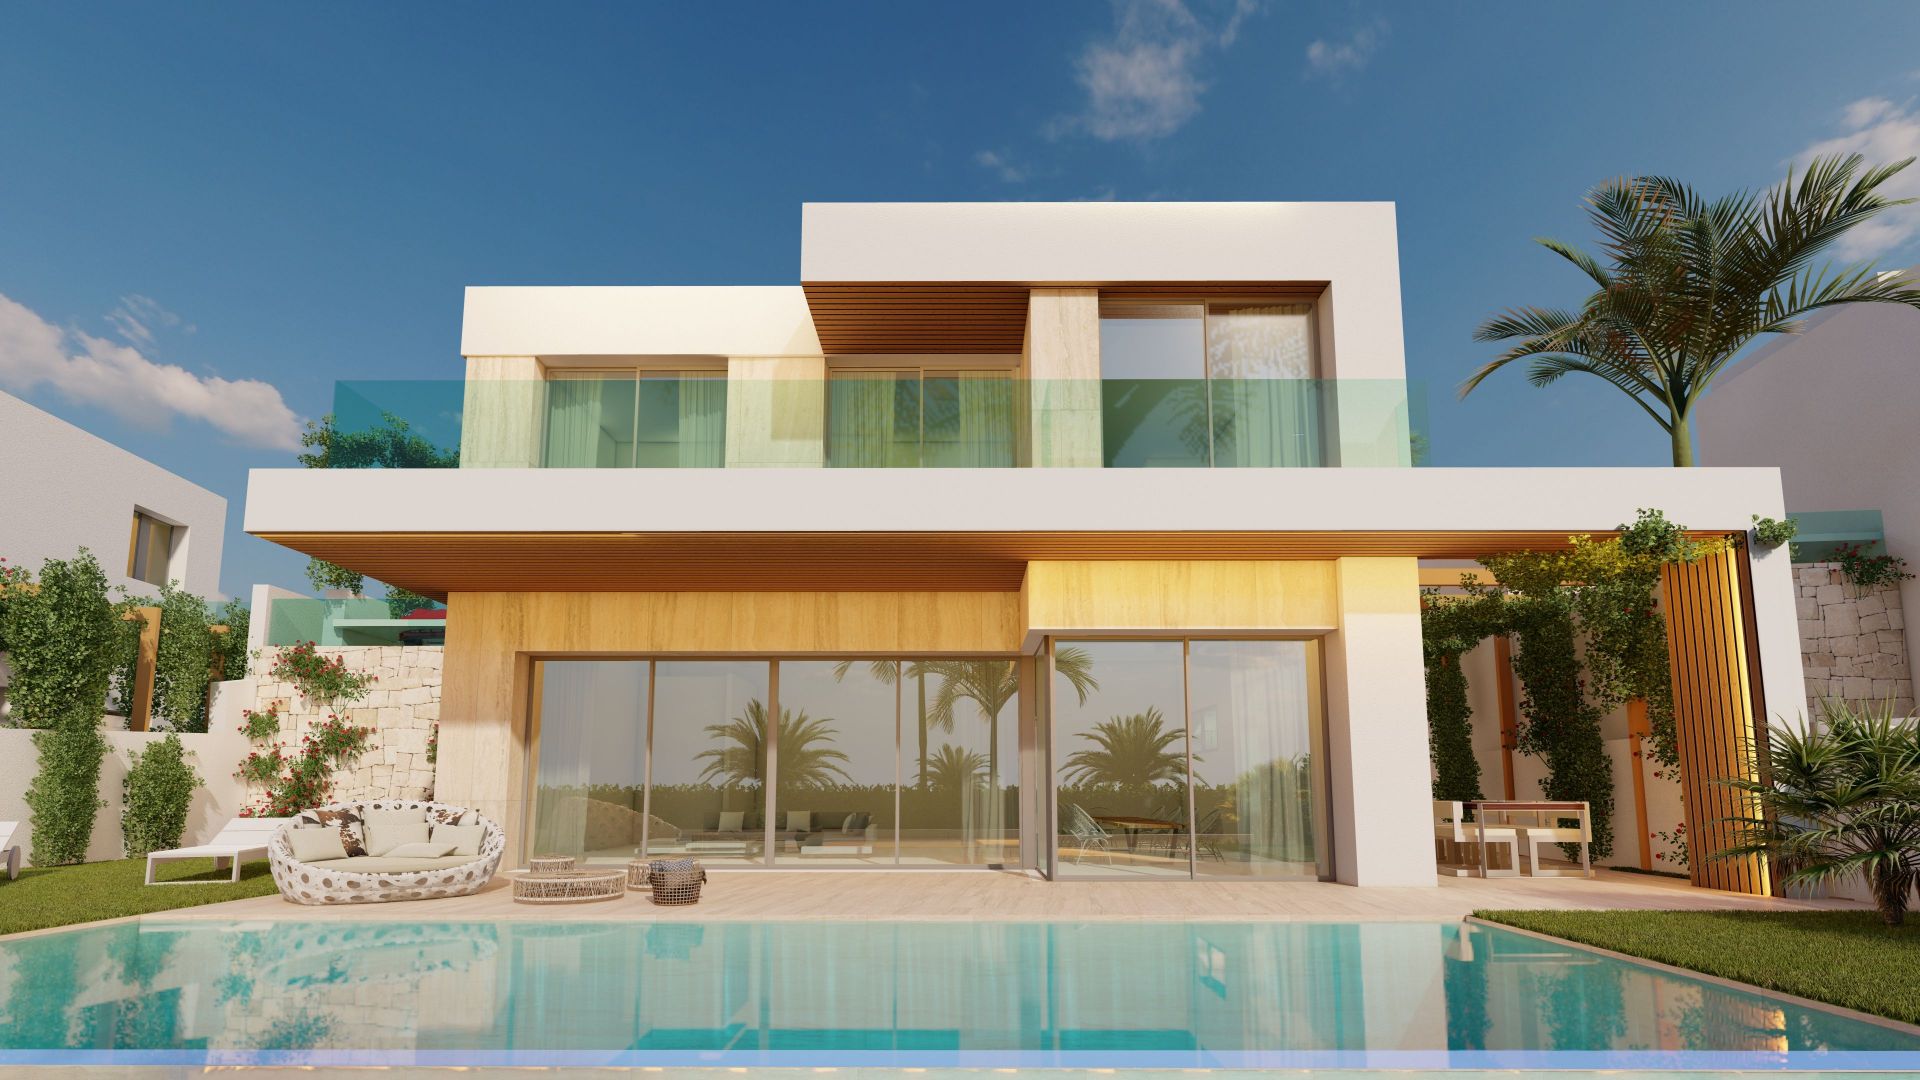 4 bedroom house / villa for sale in Estepona, Costa del Sol